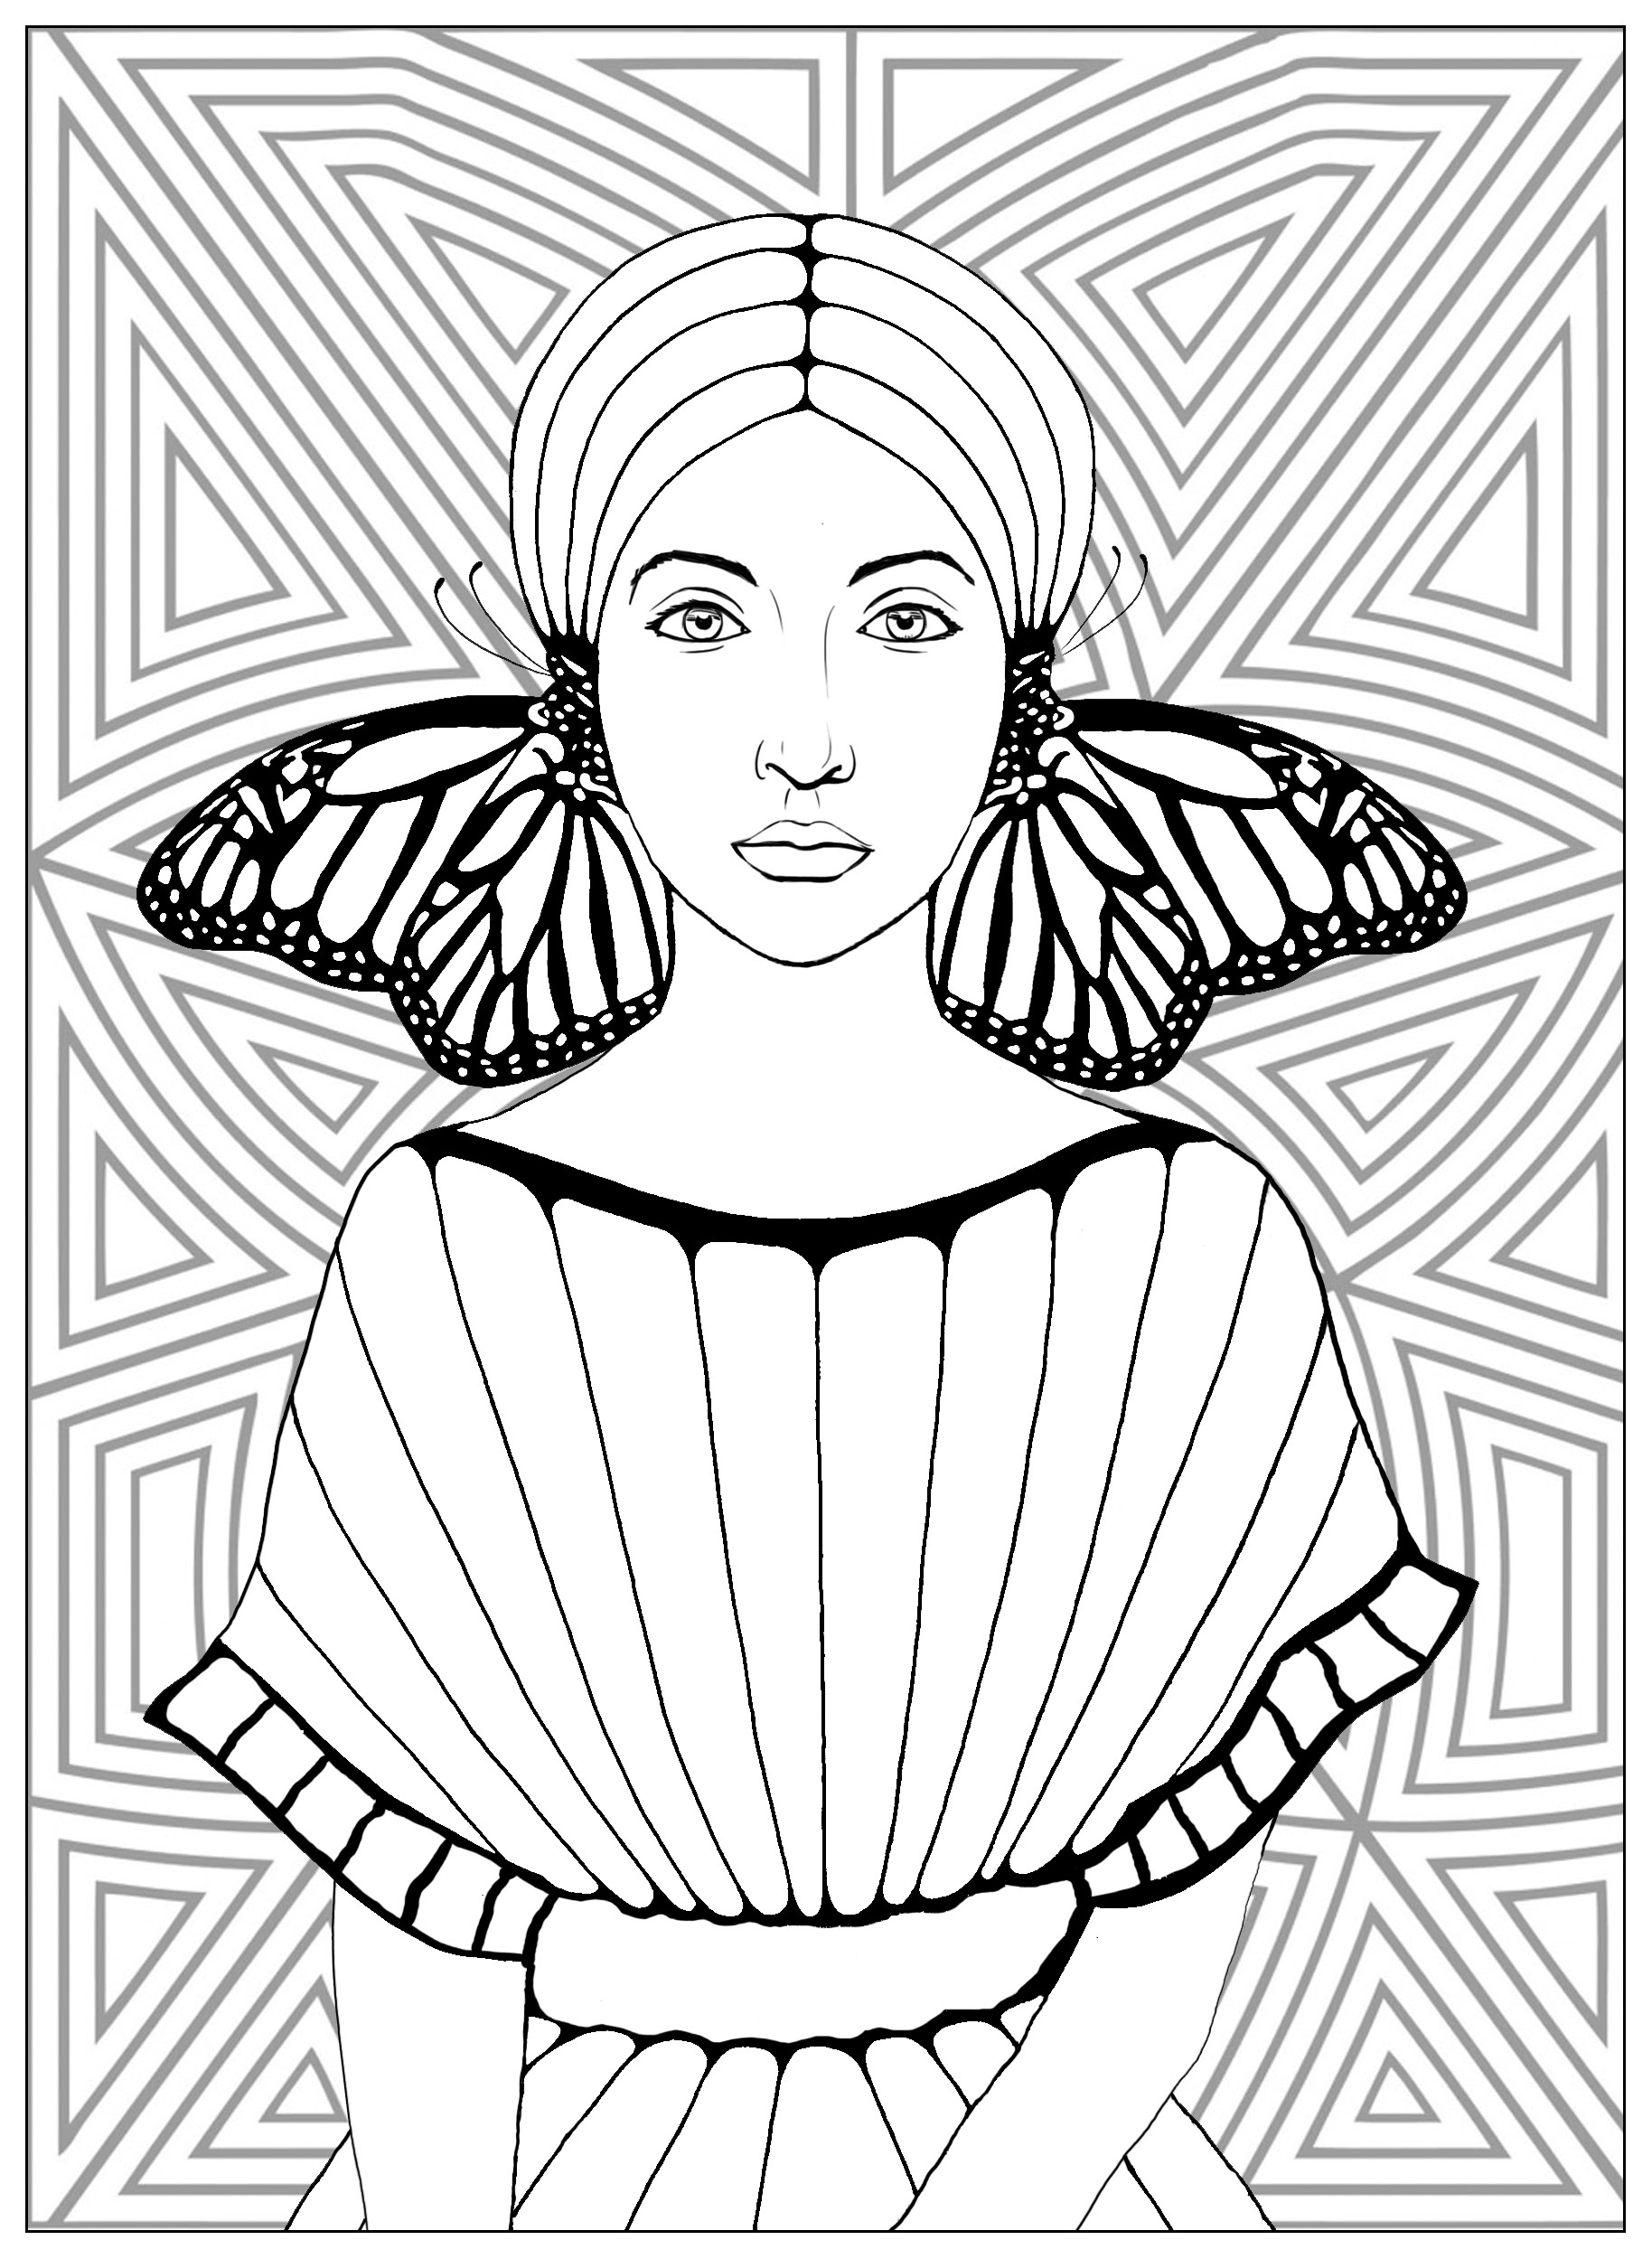 Mujer con alas de mariposa en pendiente, y bonito fondo con motivos geométricos